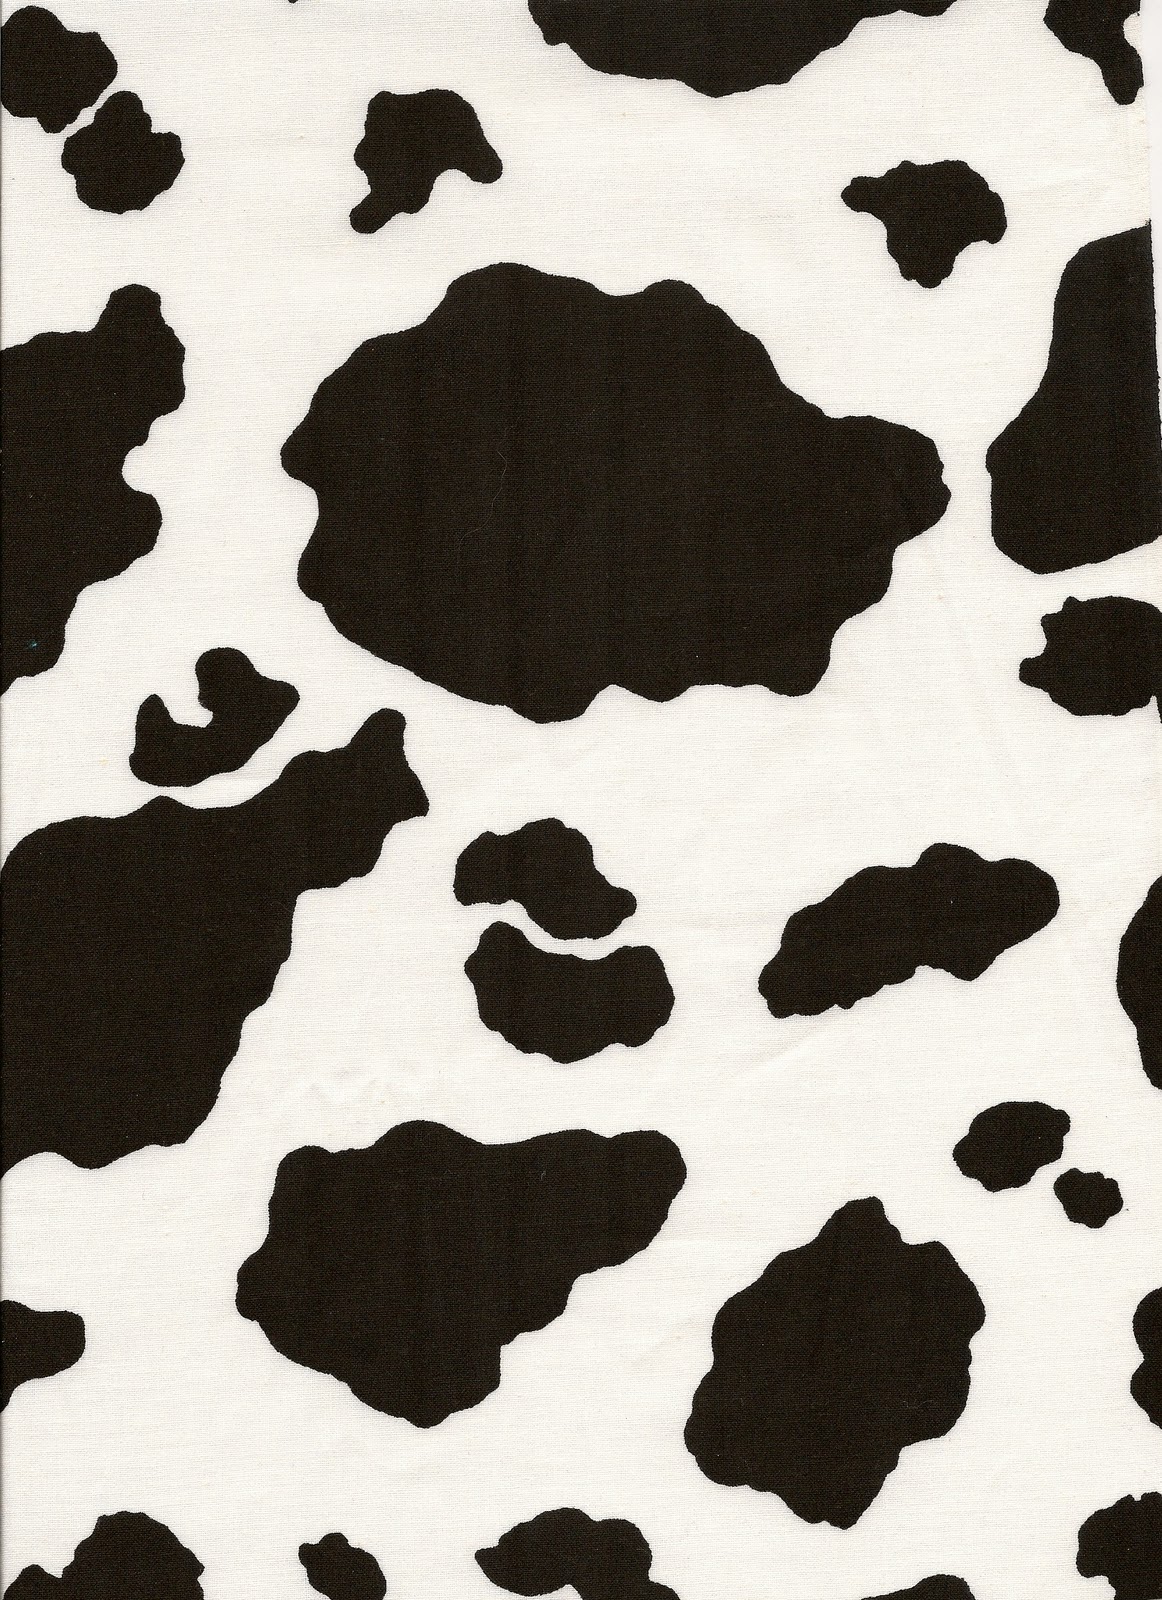 [48+] Brown Cow Print Wallpaper | WallpaperSafari.com